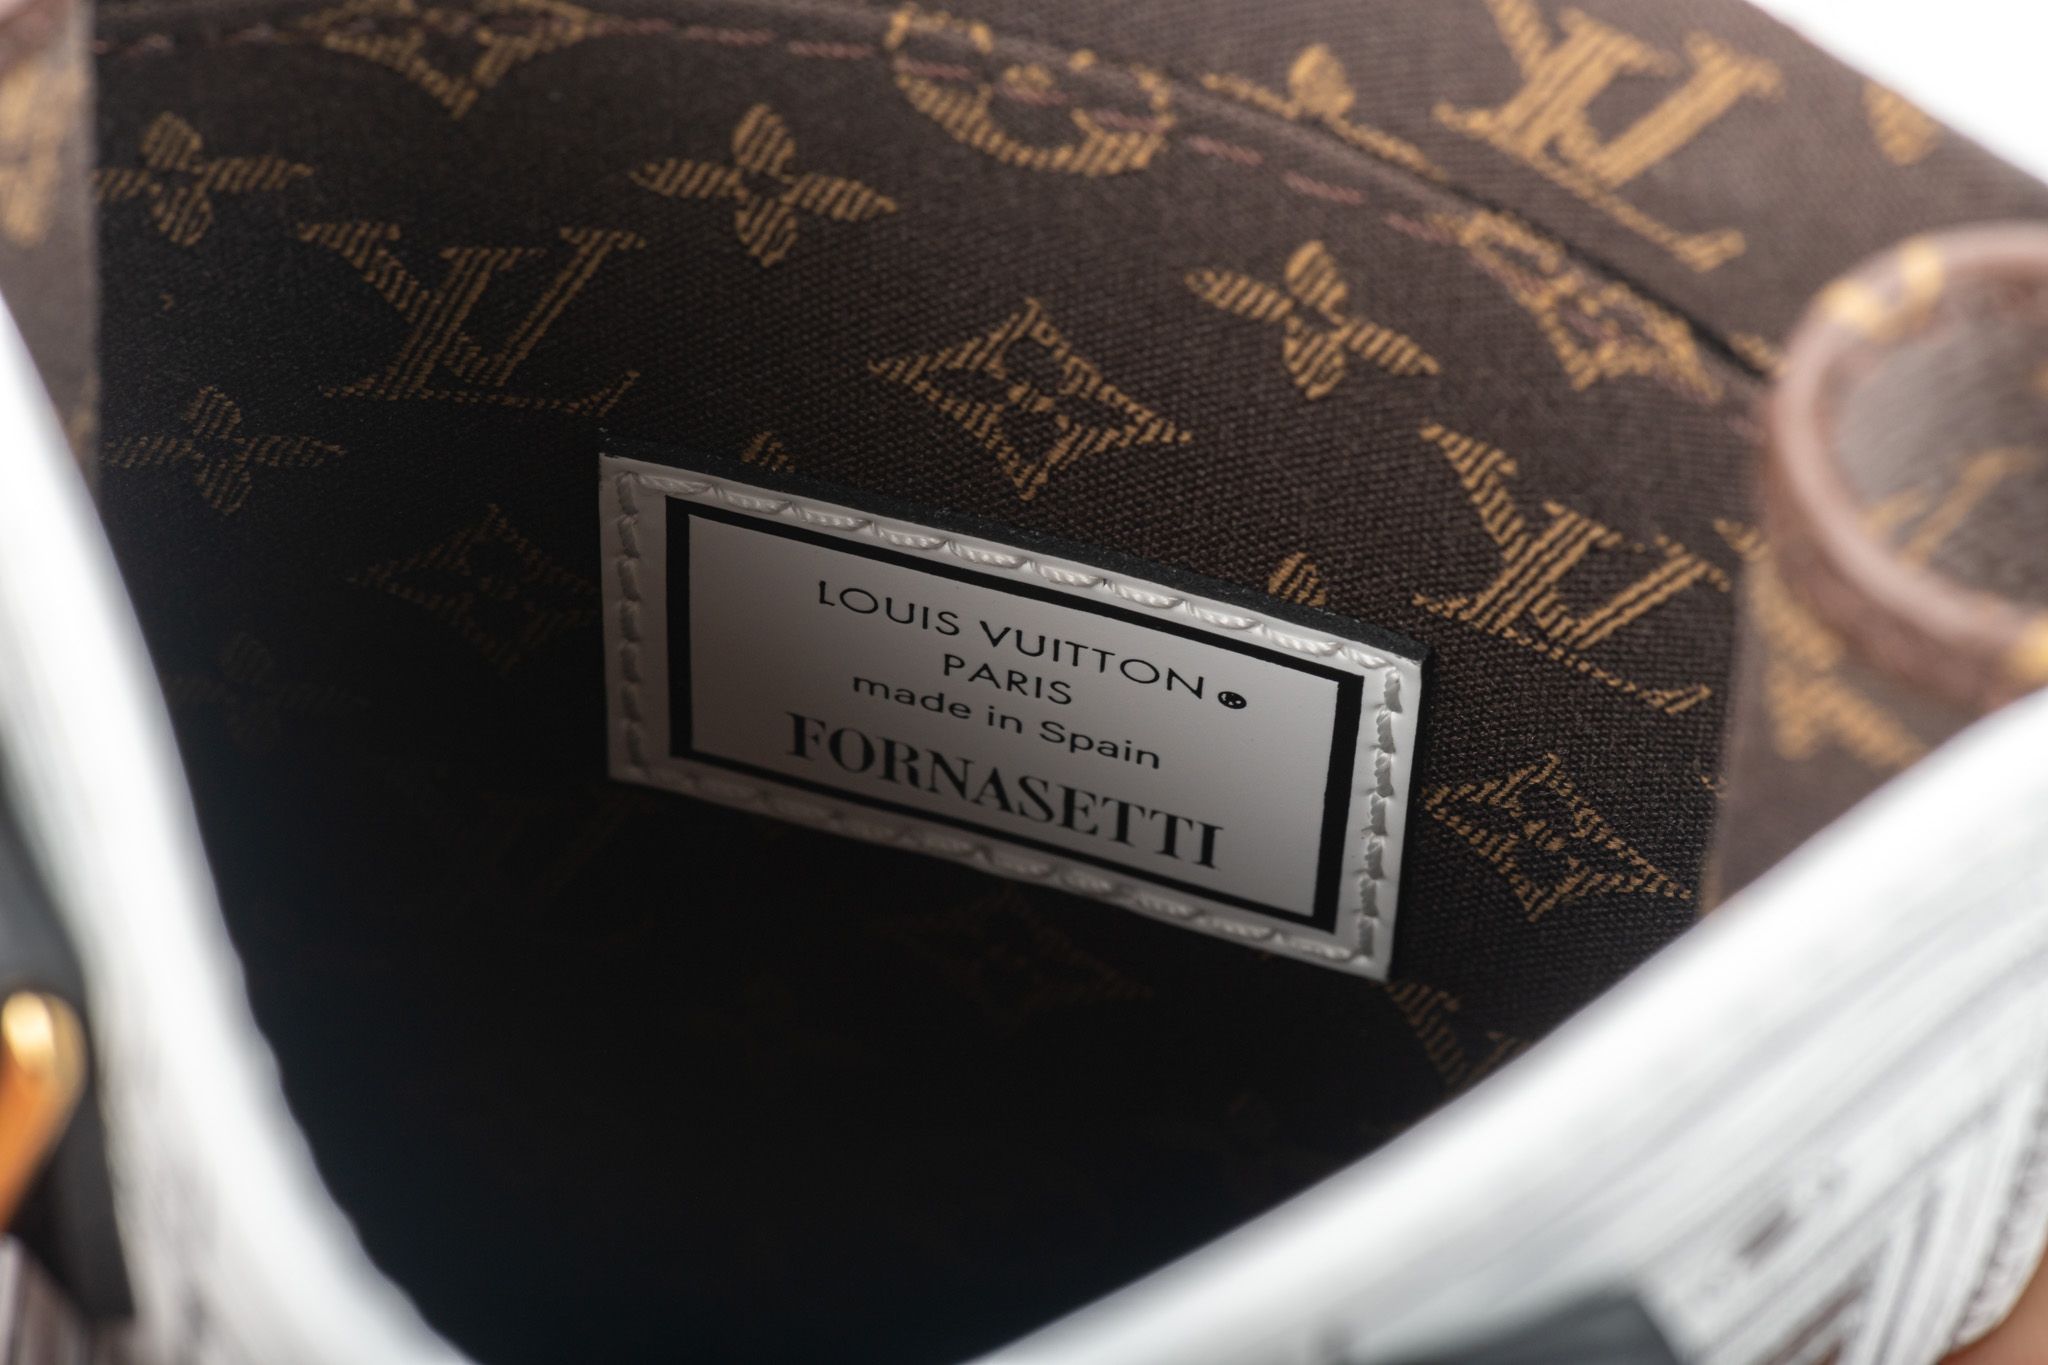 Vuitton New Fornasetti LIm.Ed. Blanket